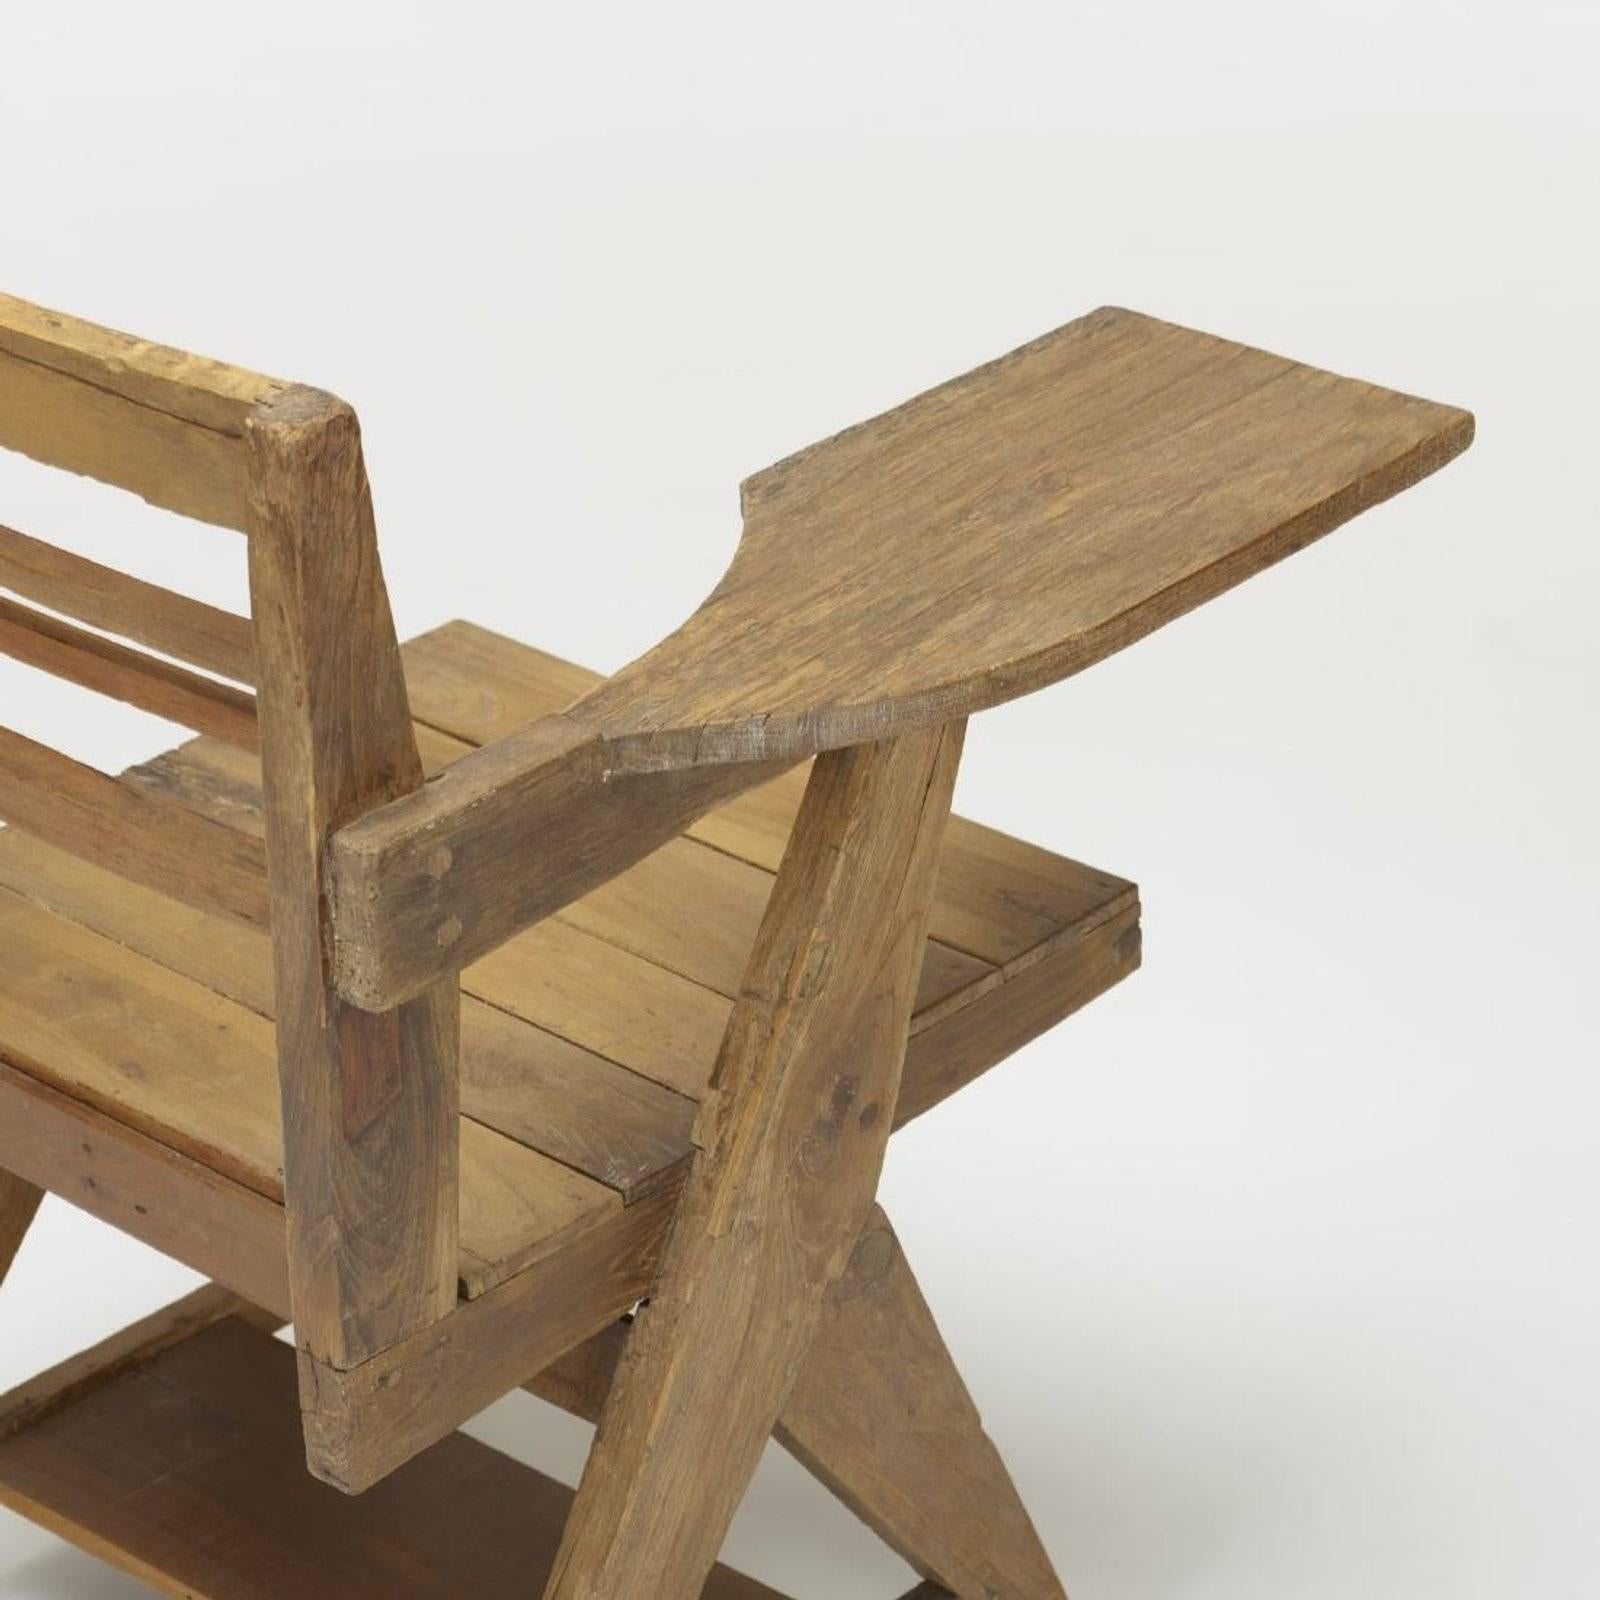 Dieses Paar Schreibtischstühle wurde speziell für das Verwaltungsgebäude in Chandigarh entworfen. Entworfen von Corbusiers Cousin Pierre Jeanneret.

Provenienz: Punjab Universität, Chandigarh, Indien Privatsammlung, Paris.

Literatur: Le